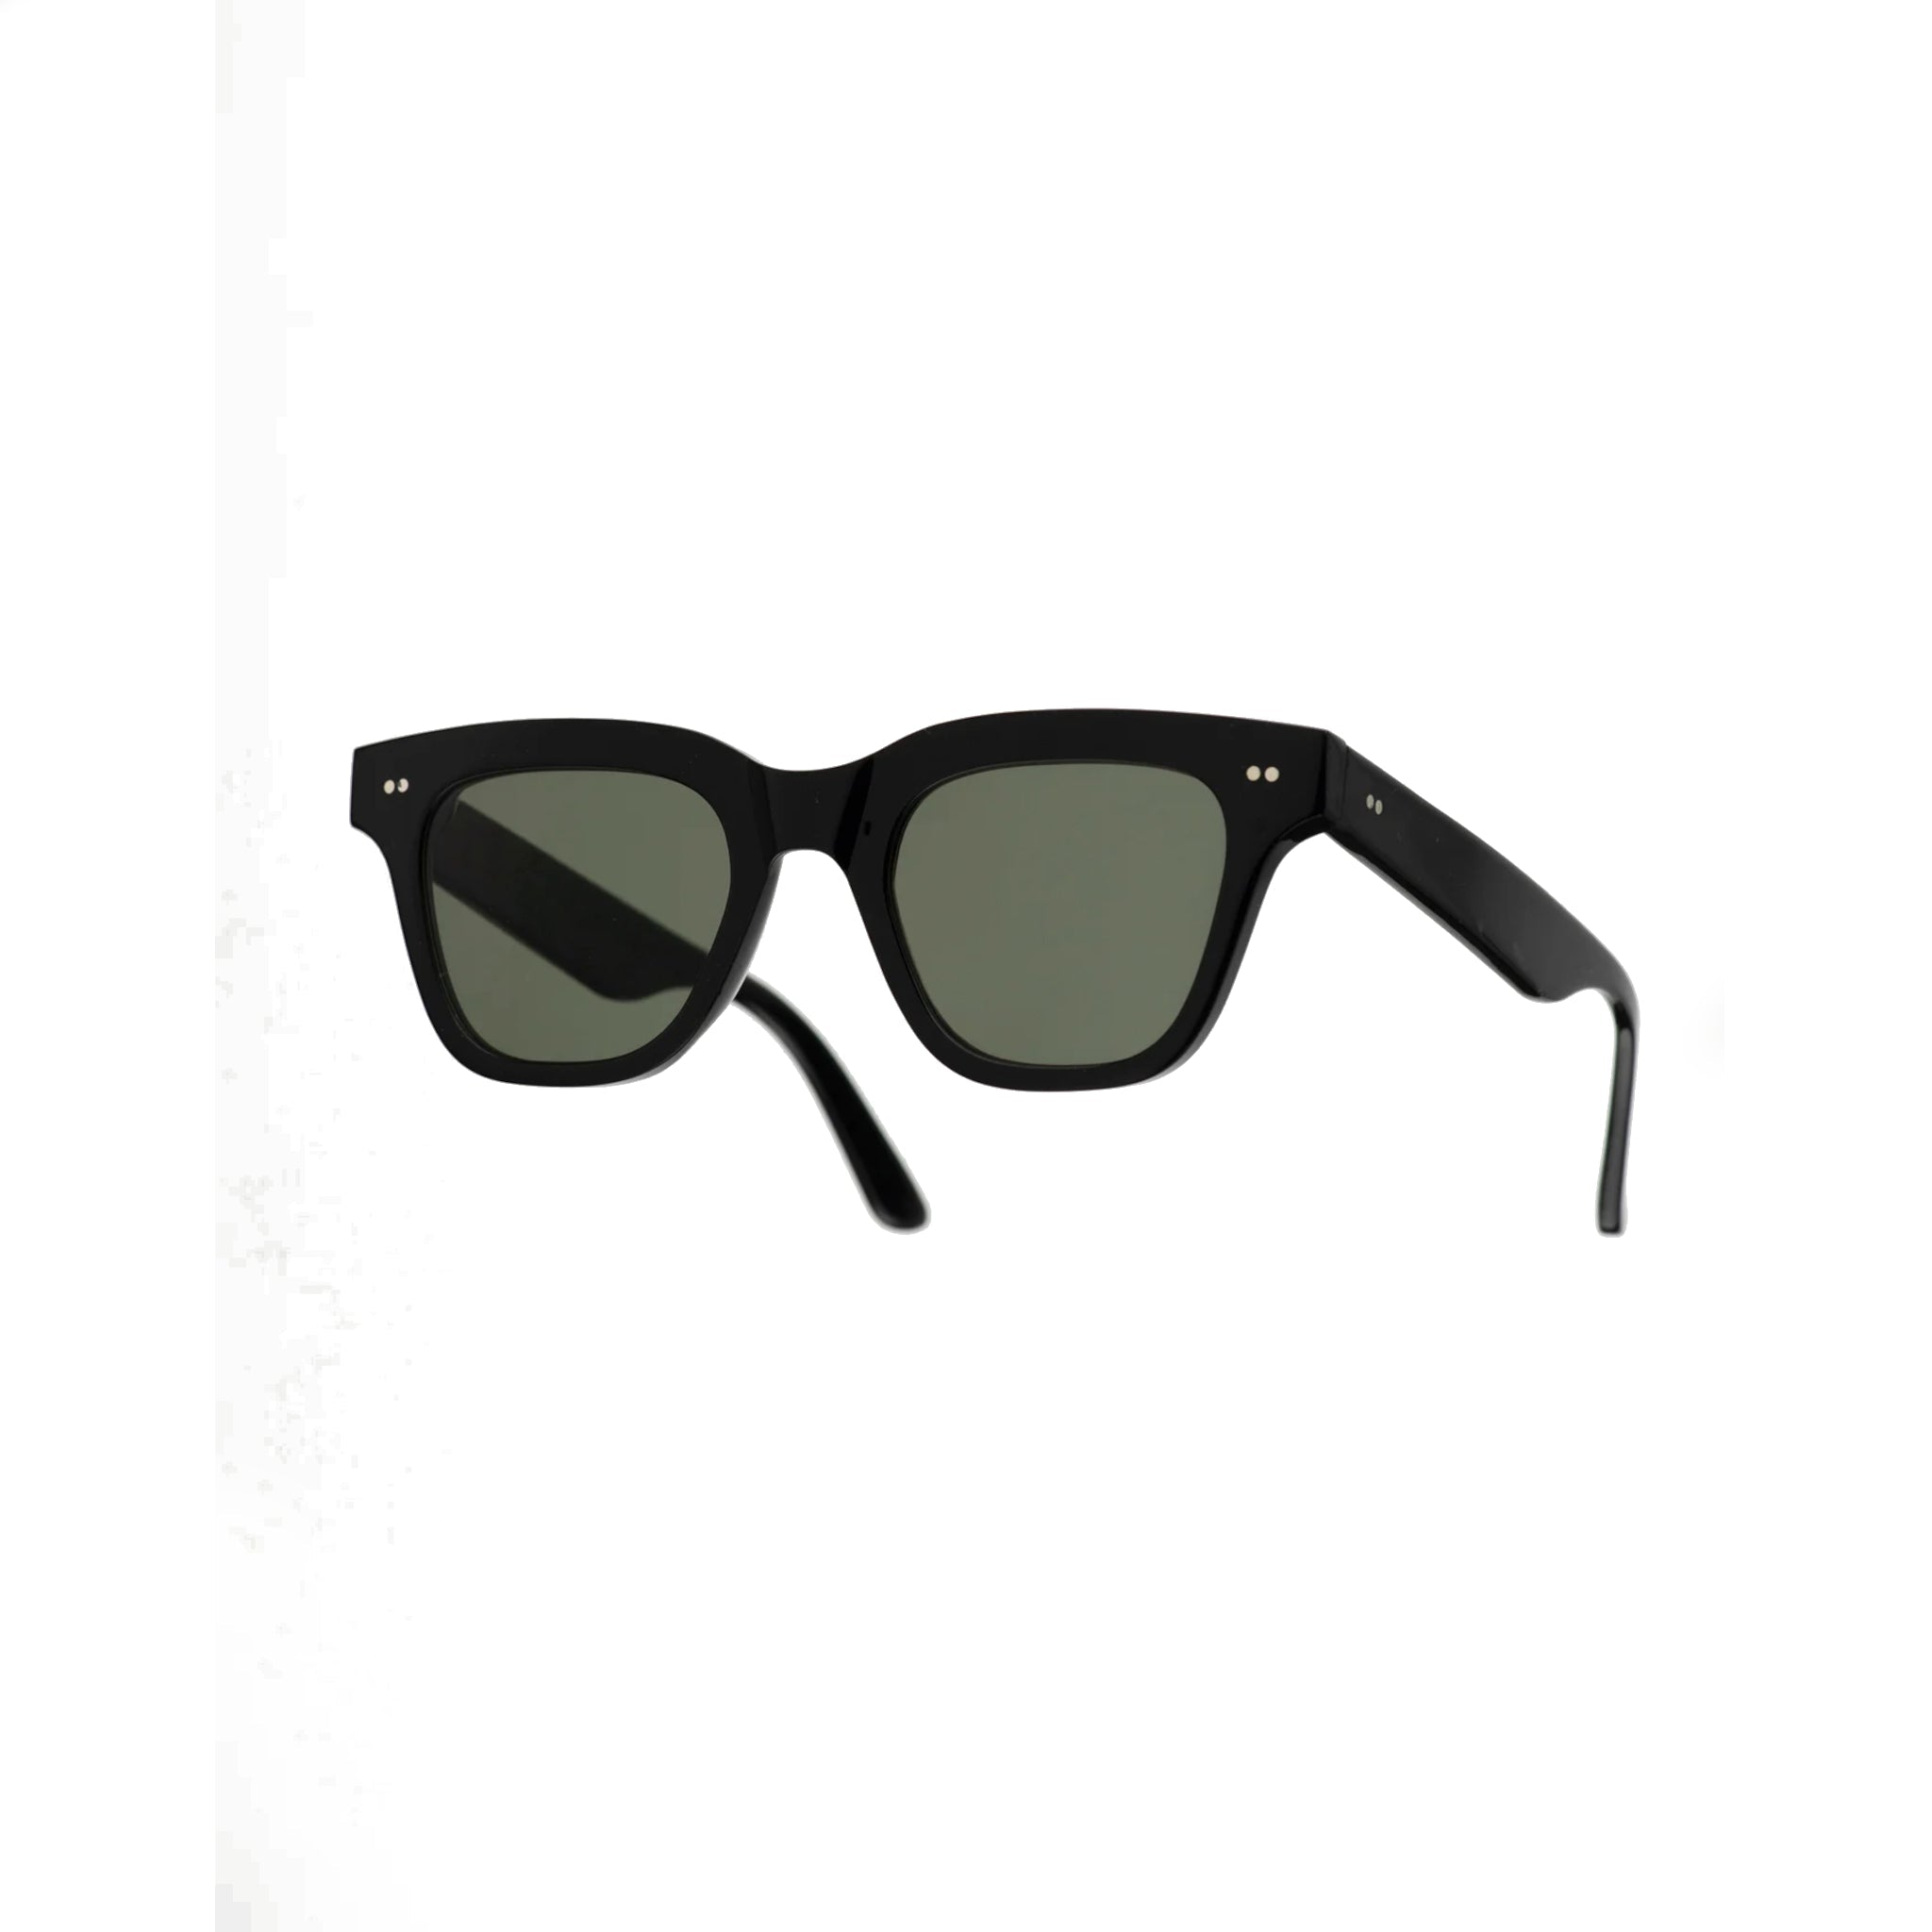 Ellis Sunglasses - Black-Monokel-W2 Store